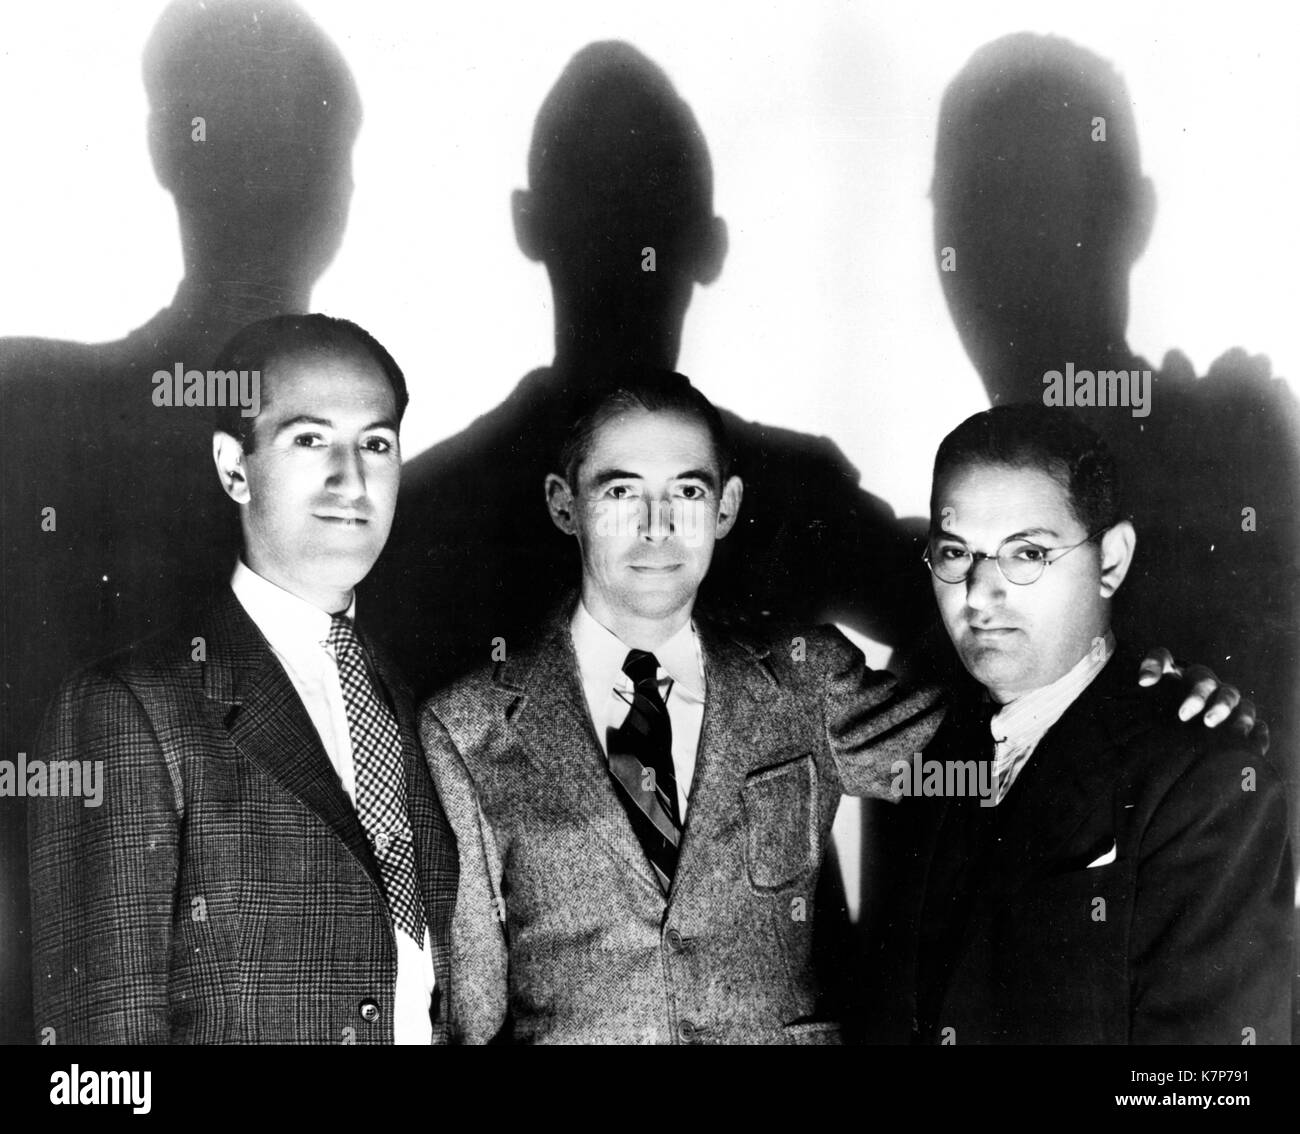 Die drei Macher von "Porgy und Bess", (von links nach rechts) George Gershwin, DuBose Heyward und Ira Gershwin, New York, NY, 1935. Stockfoto